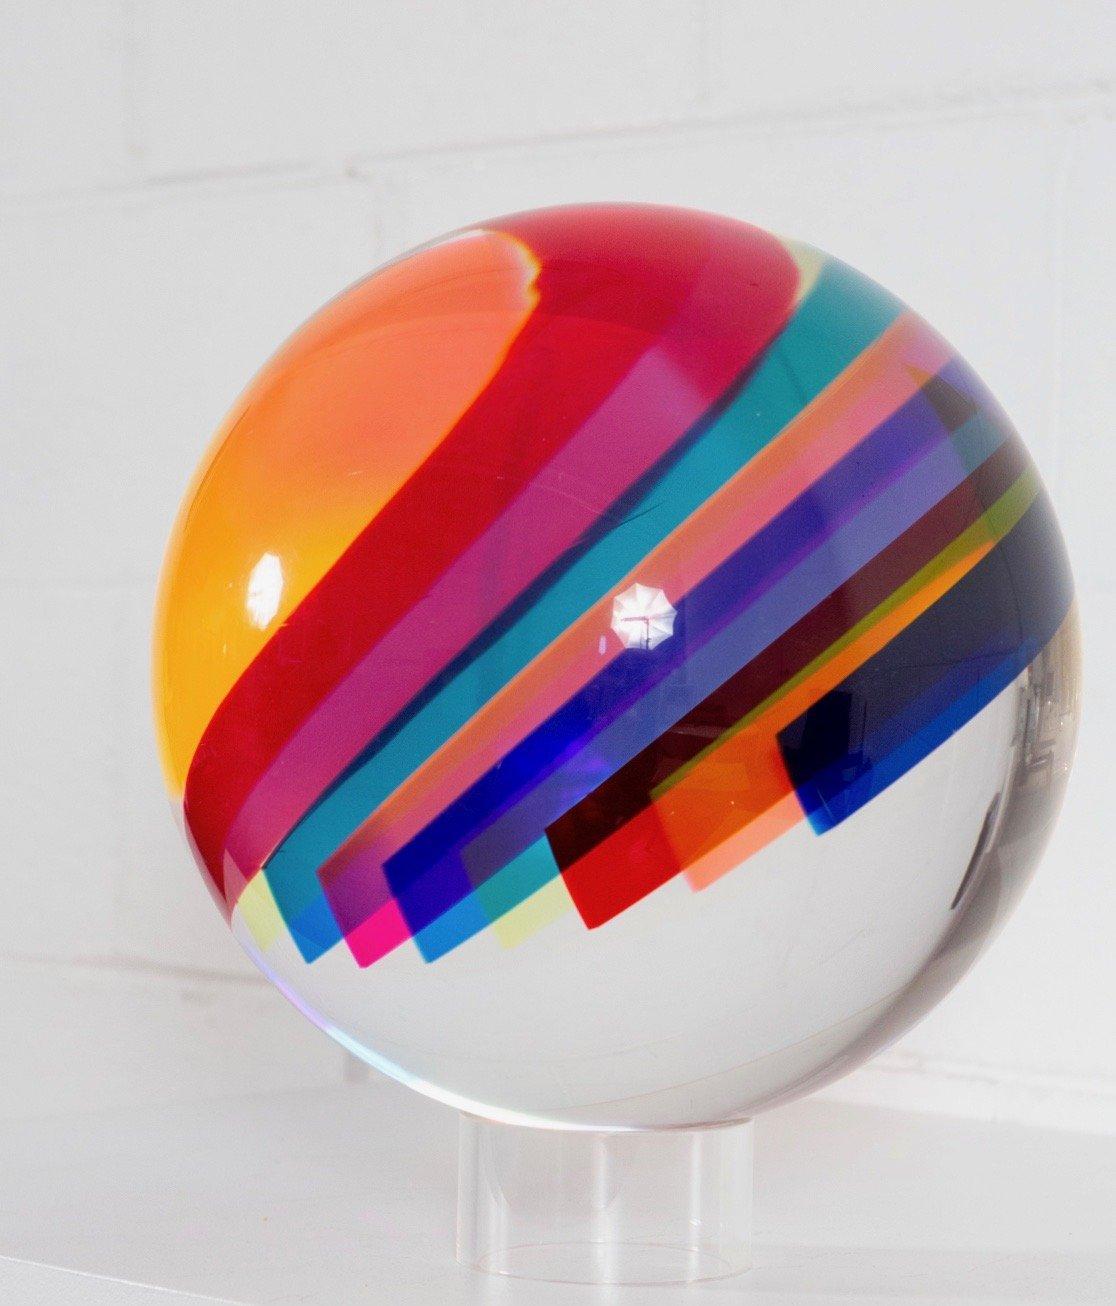 Rainbow Orb - Sculpture by Vasa Velizar Mihich